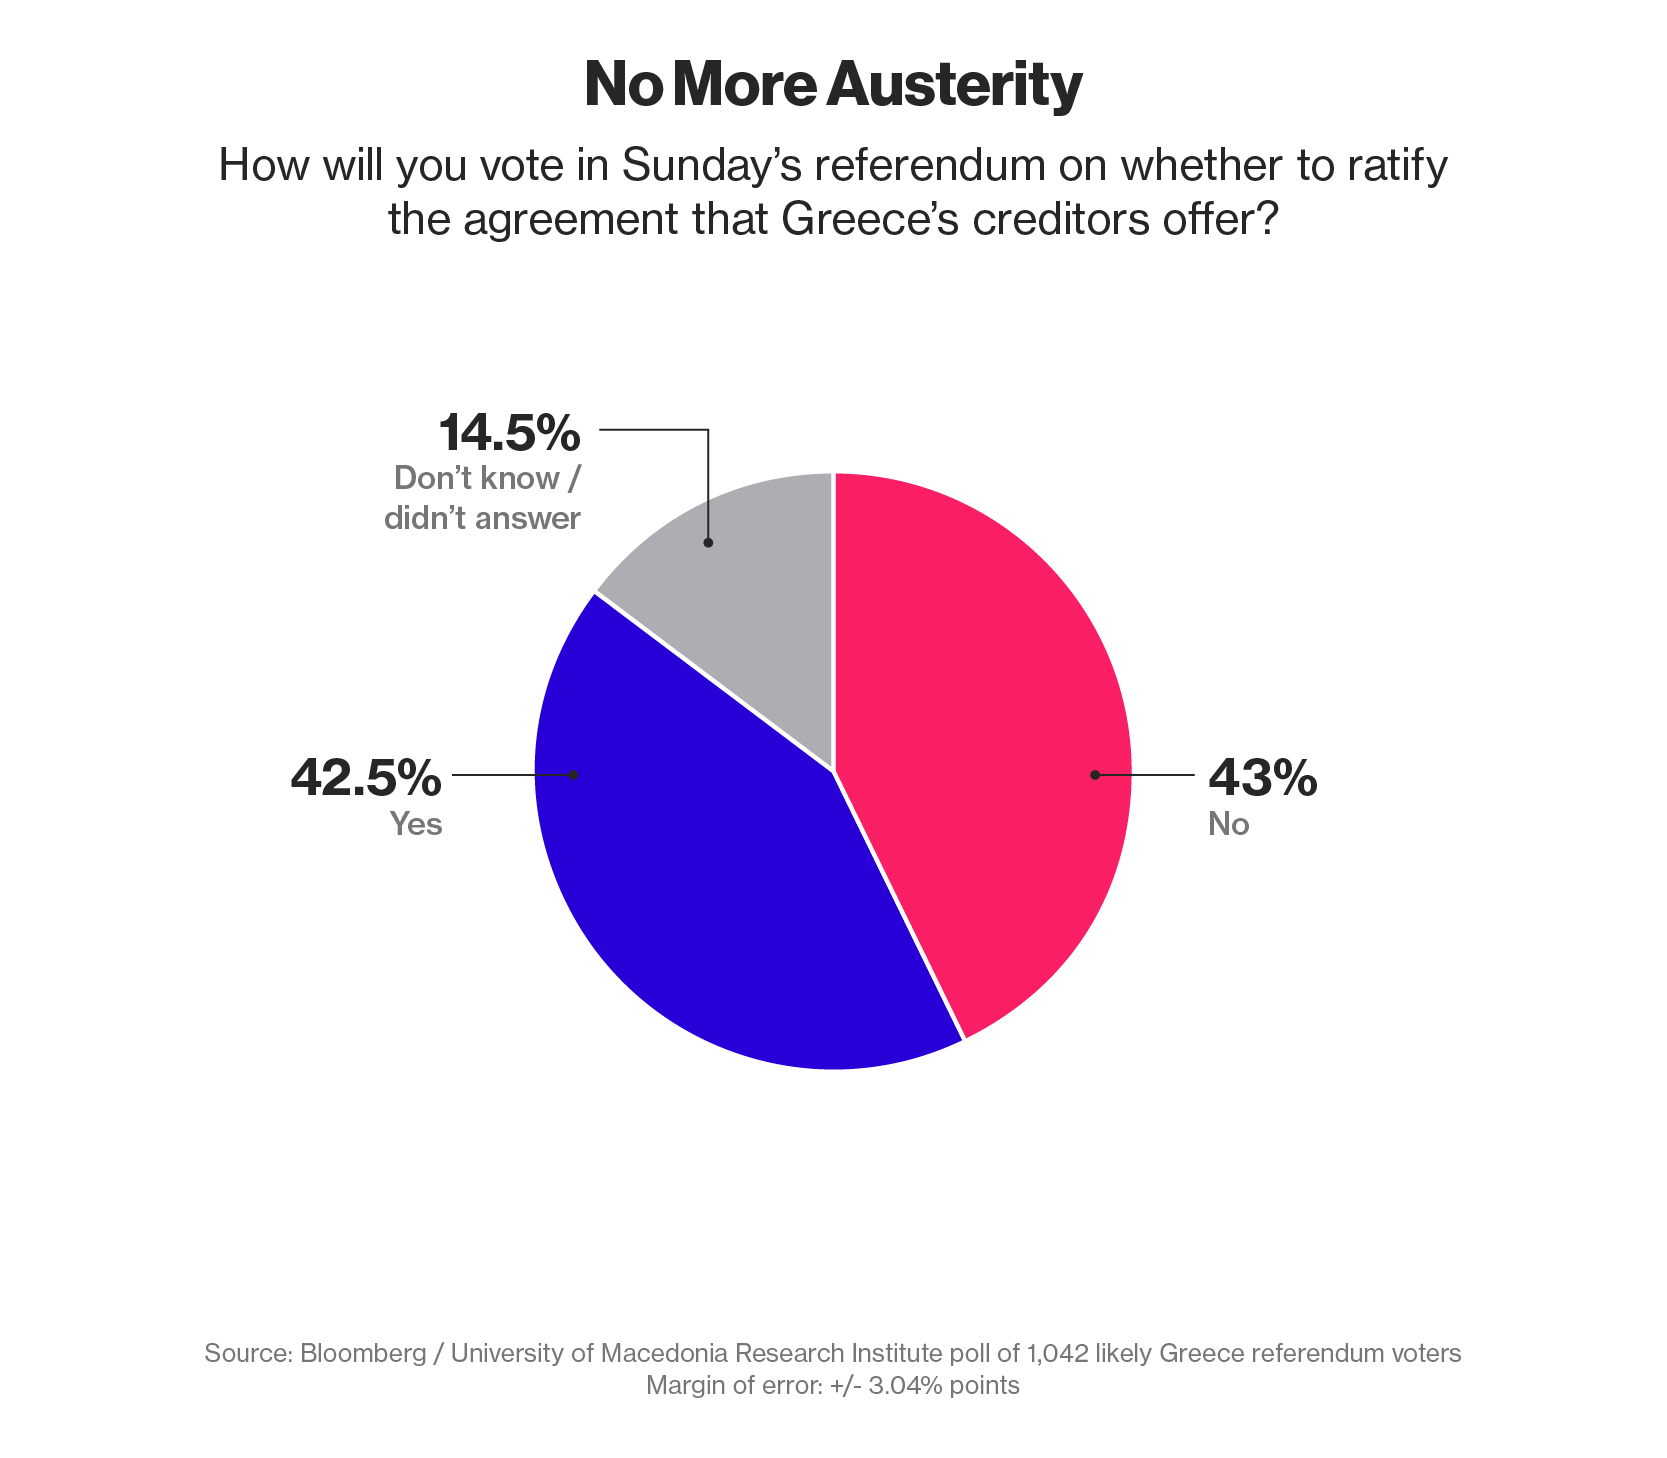 Мнения греков в отношении референдума разделились пополам